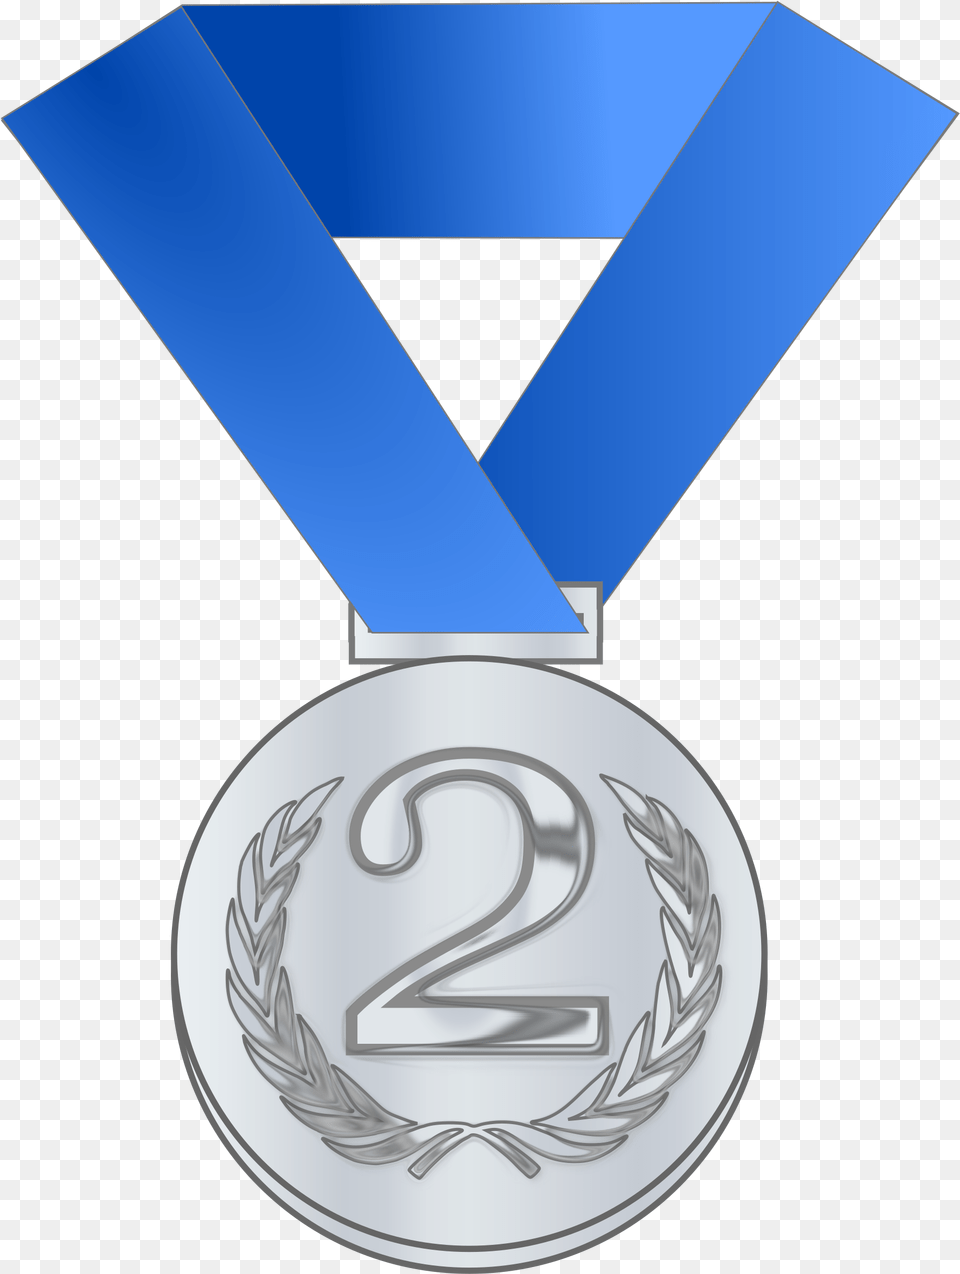 Silver Medal Award Clip Arts Clip Art Silver Medal, Gold, Trophy, Gold Medal Free Transparent Png